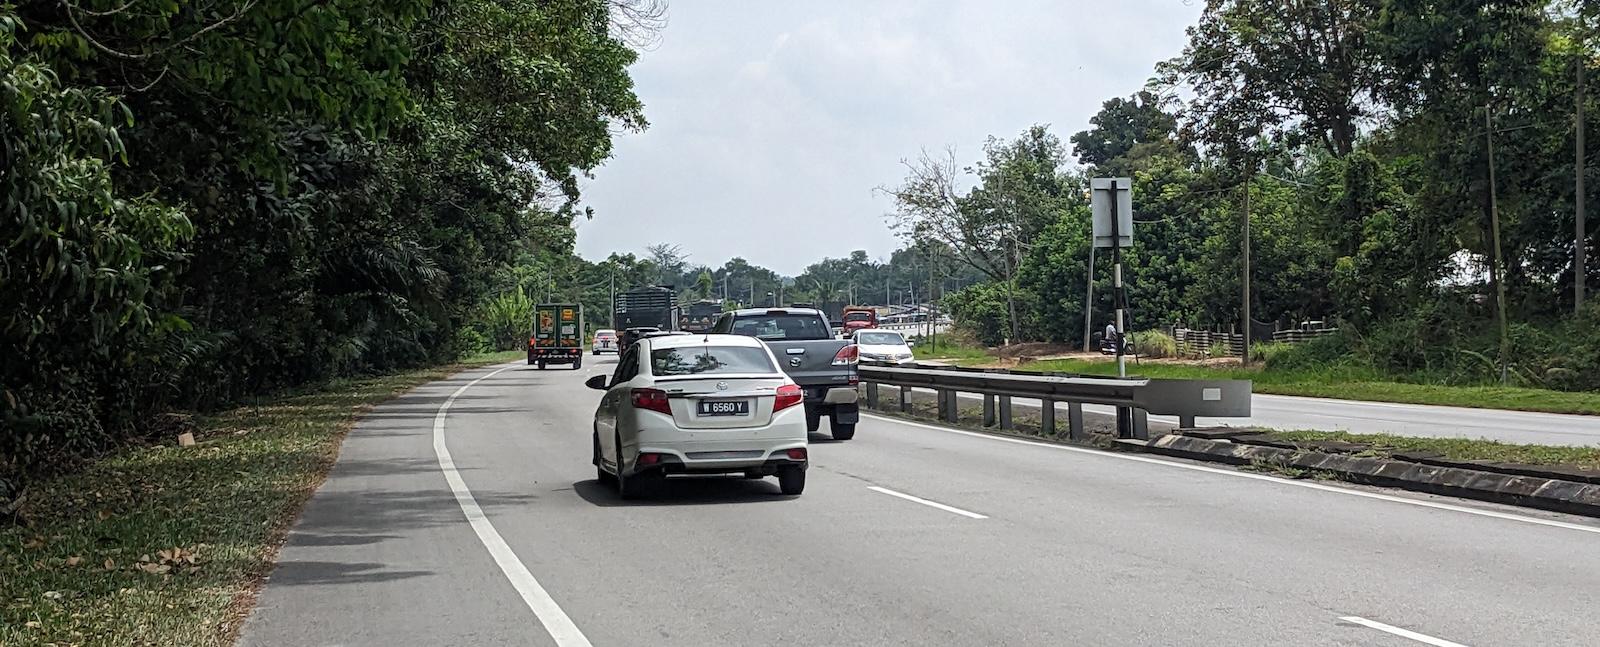 Road in Malaysia